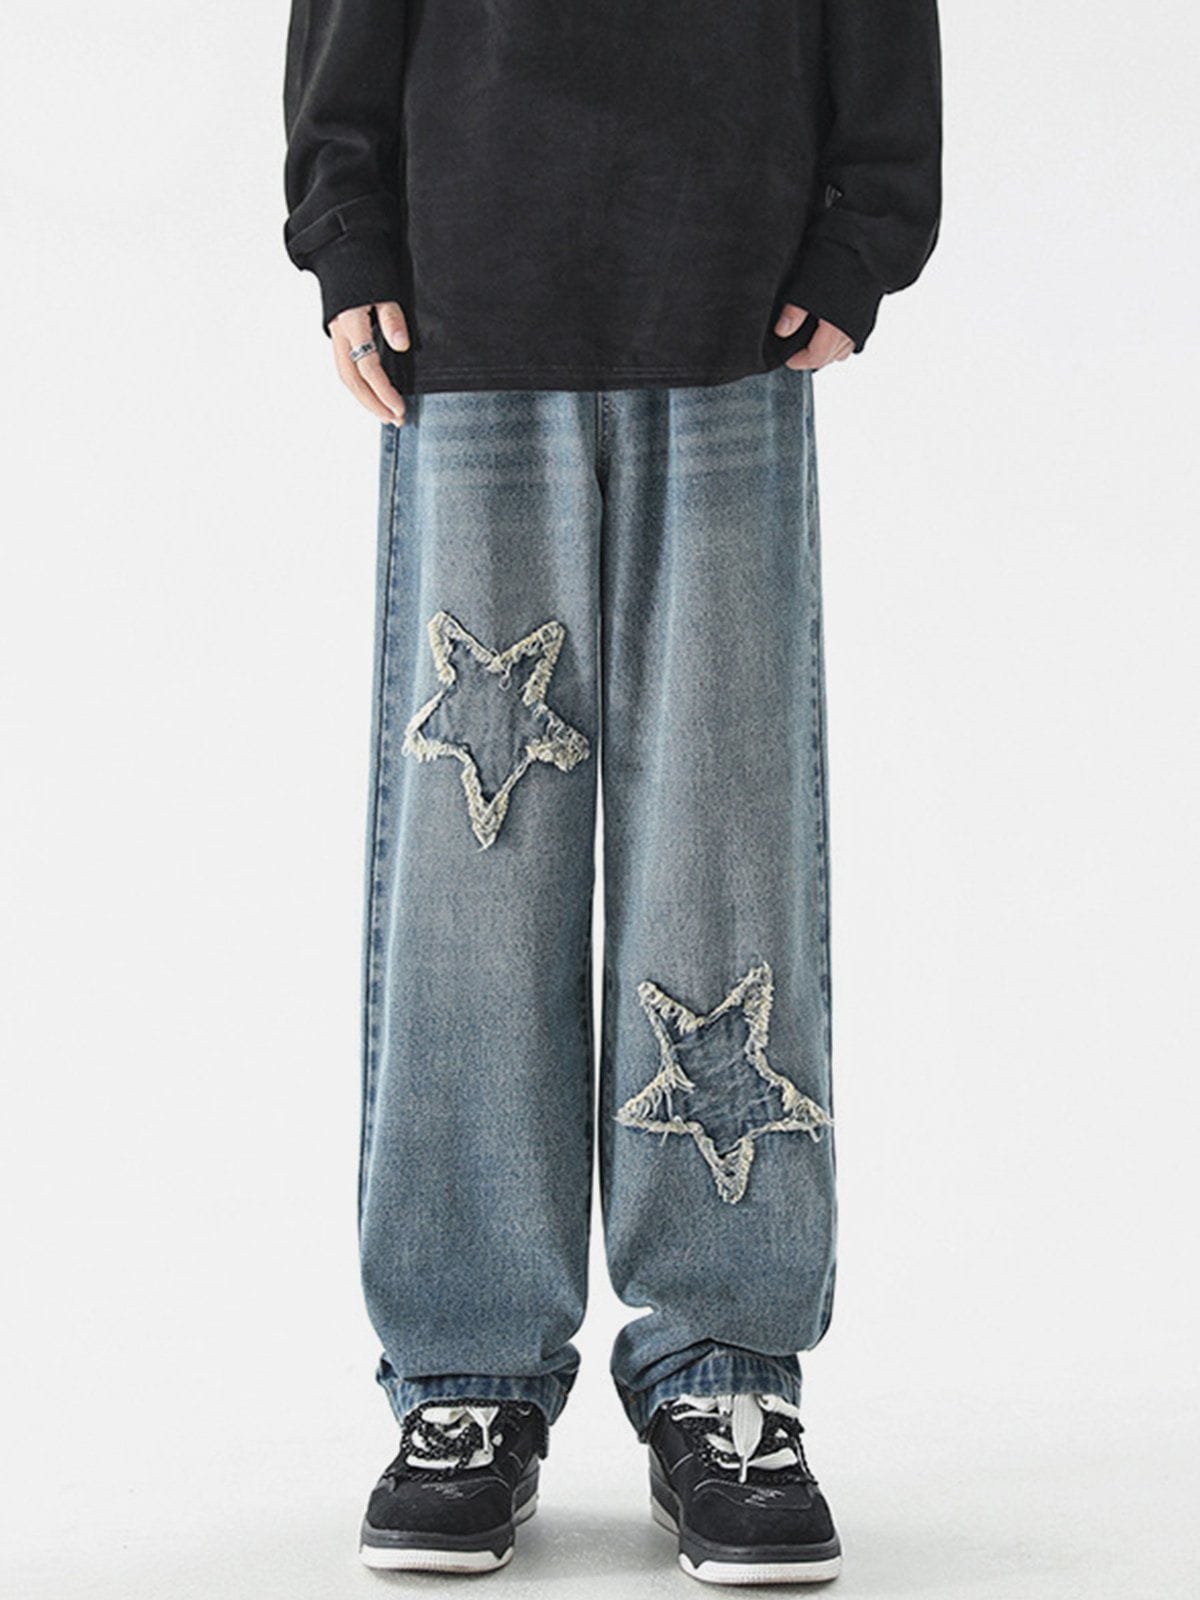 Eprezzy® - Star Patchwork Jeans Streetwear Fashion - eprezzy.com